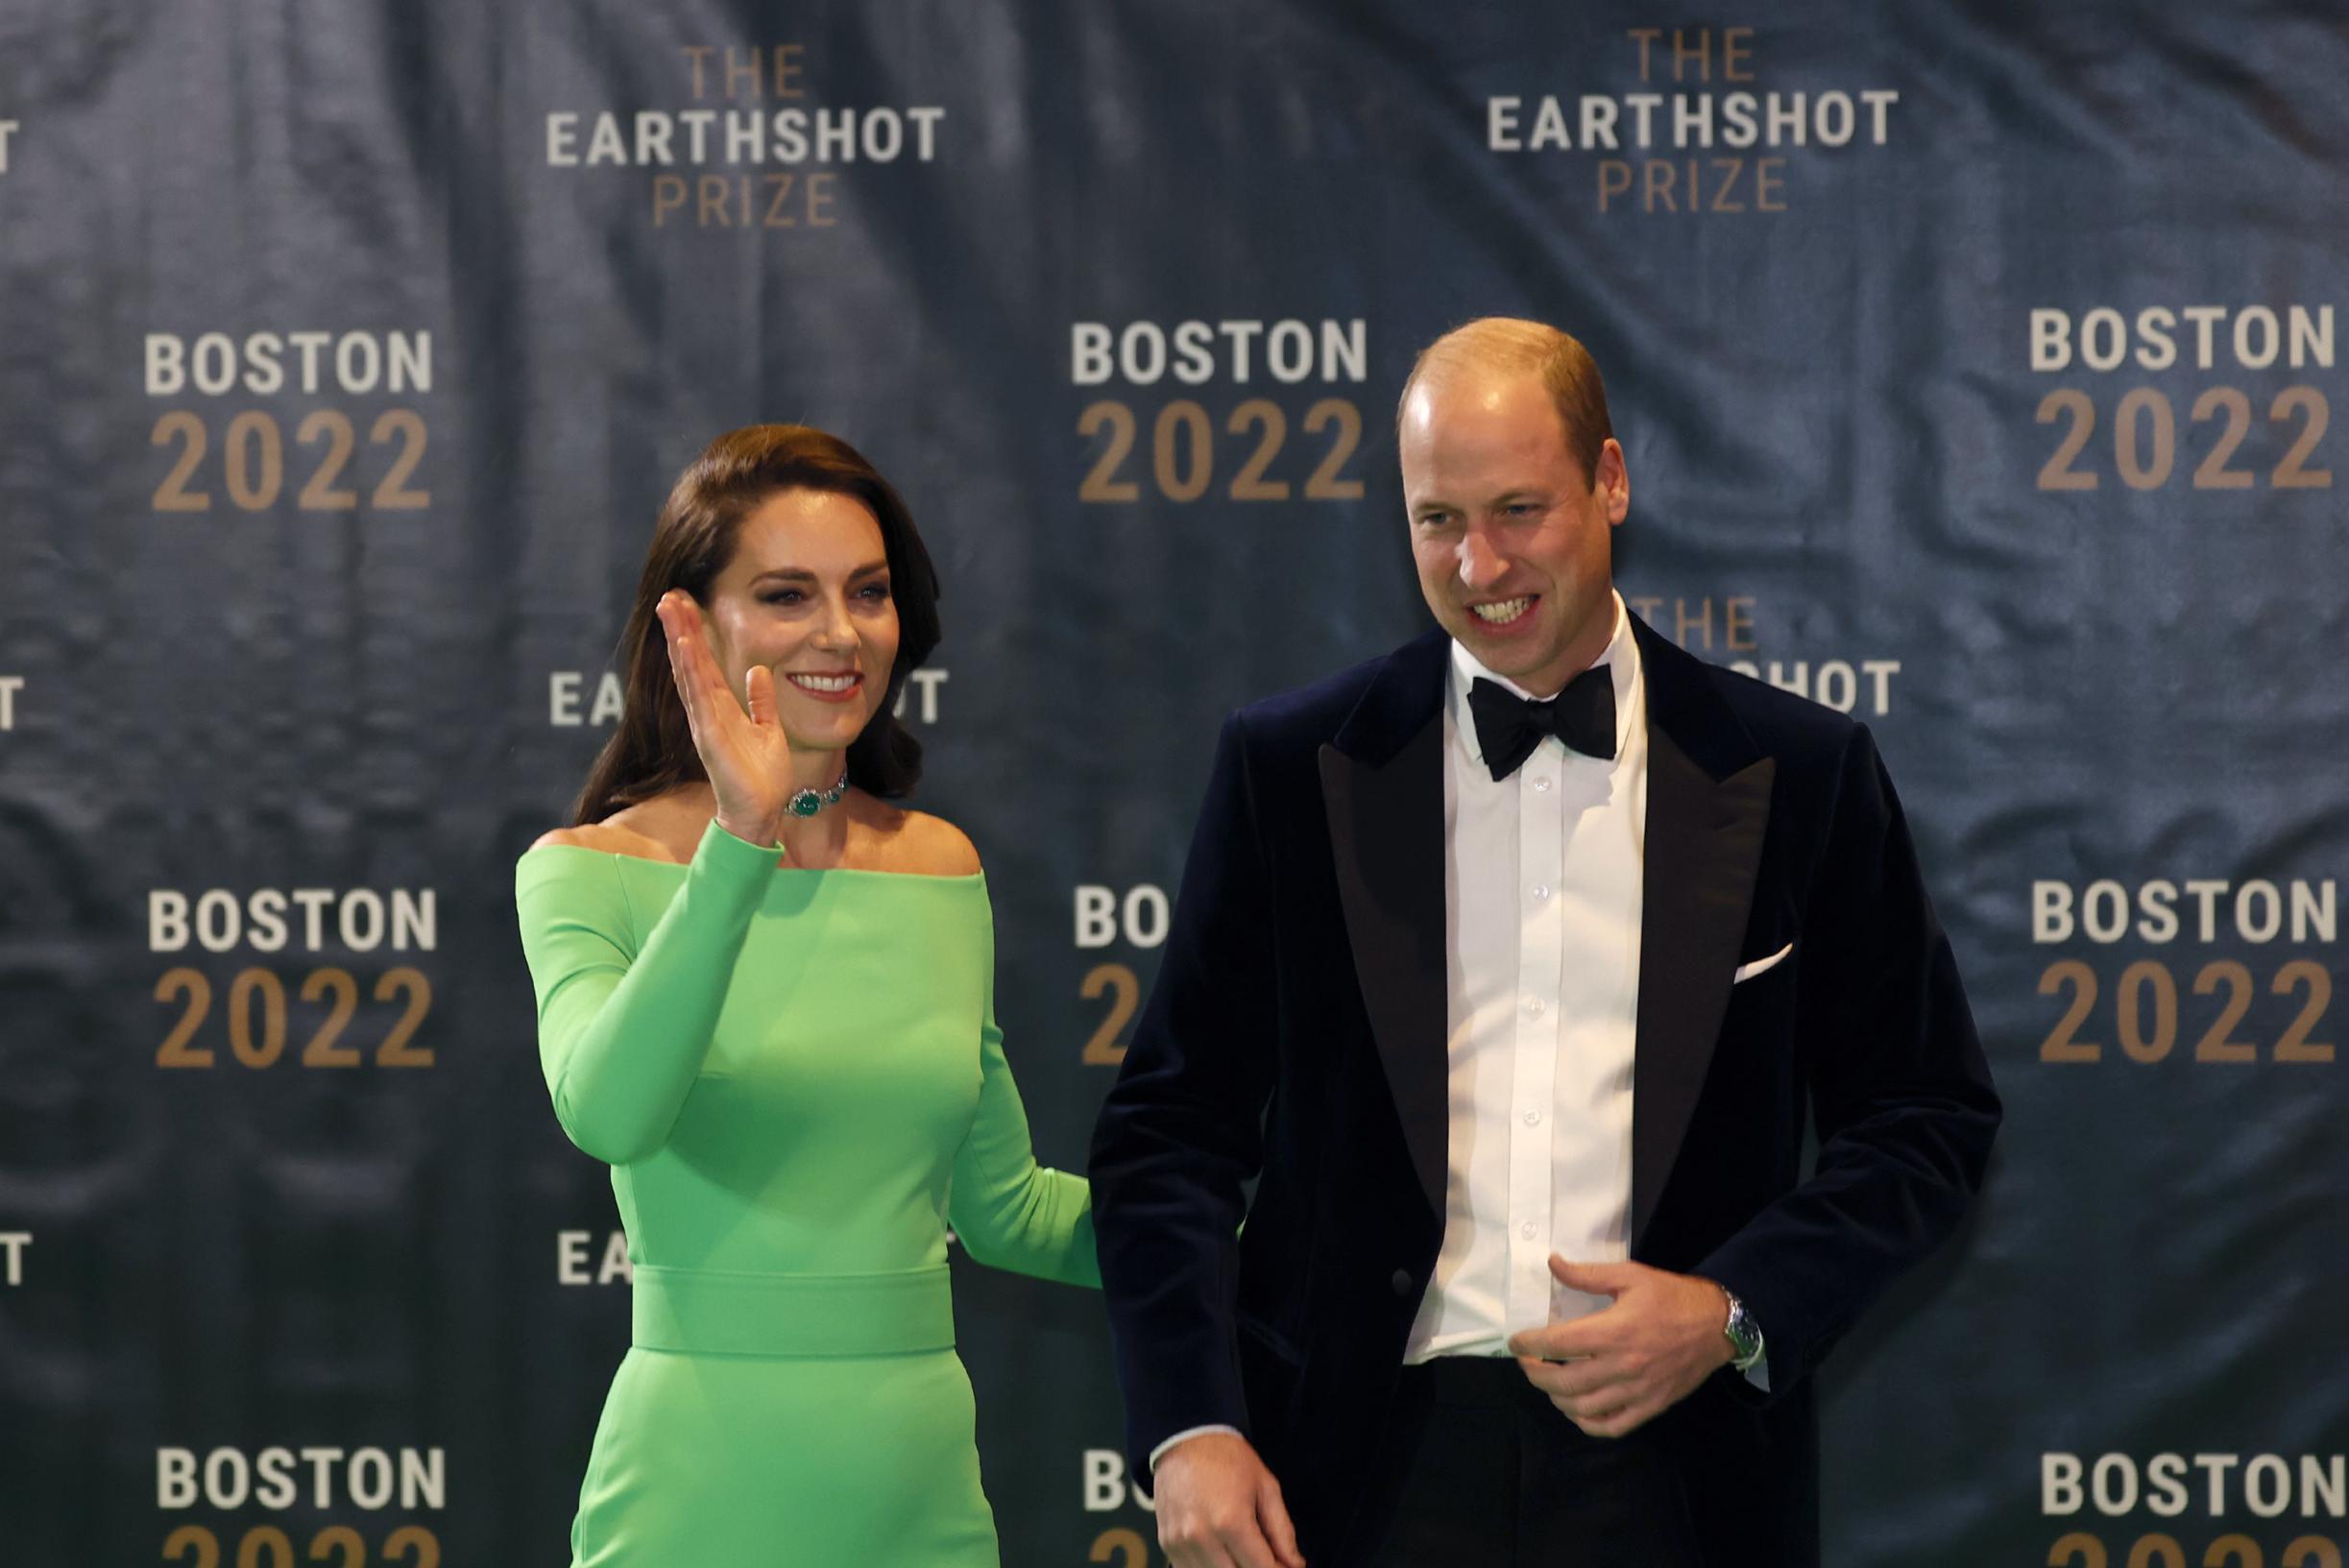 Creative Twitter ha riso del vestito verde scintillante di Kate Middleton